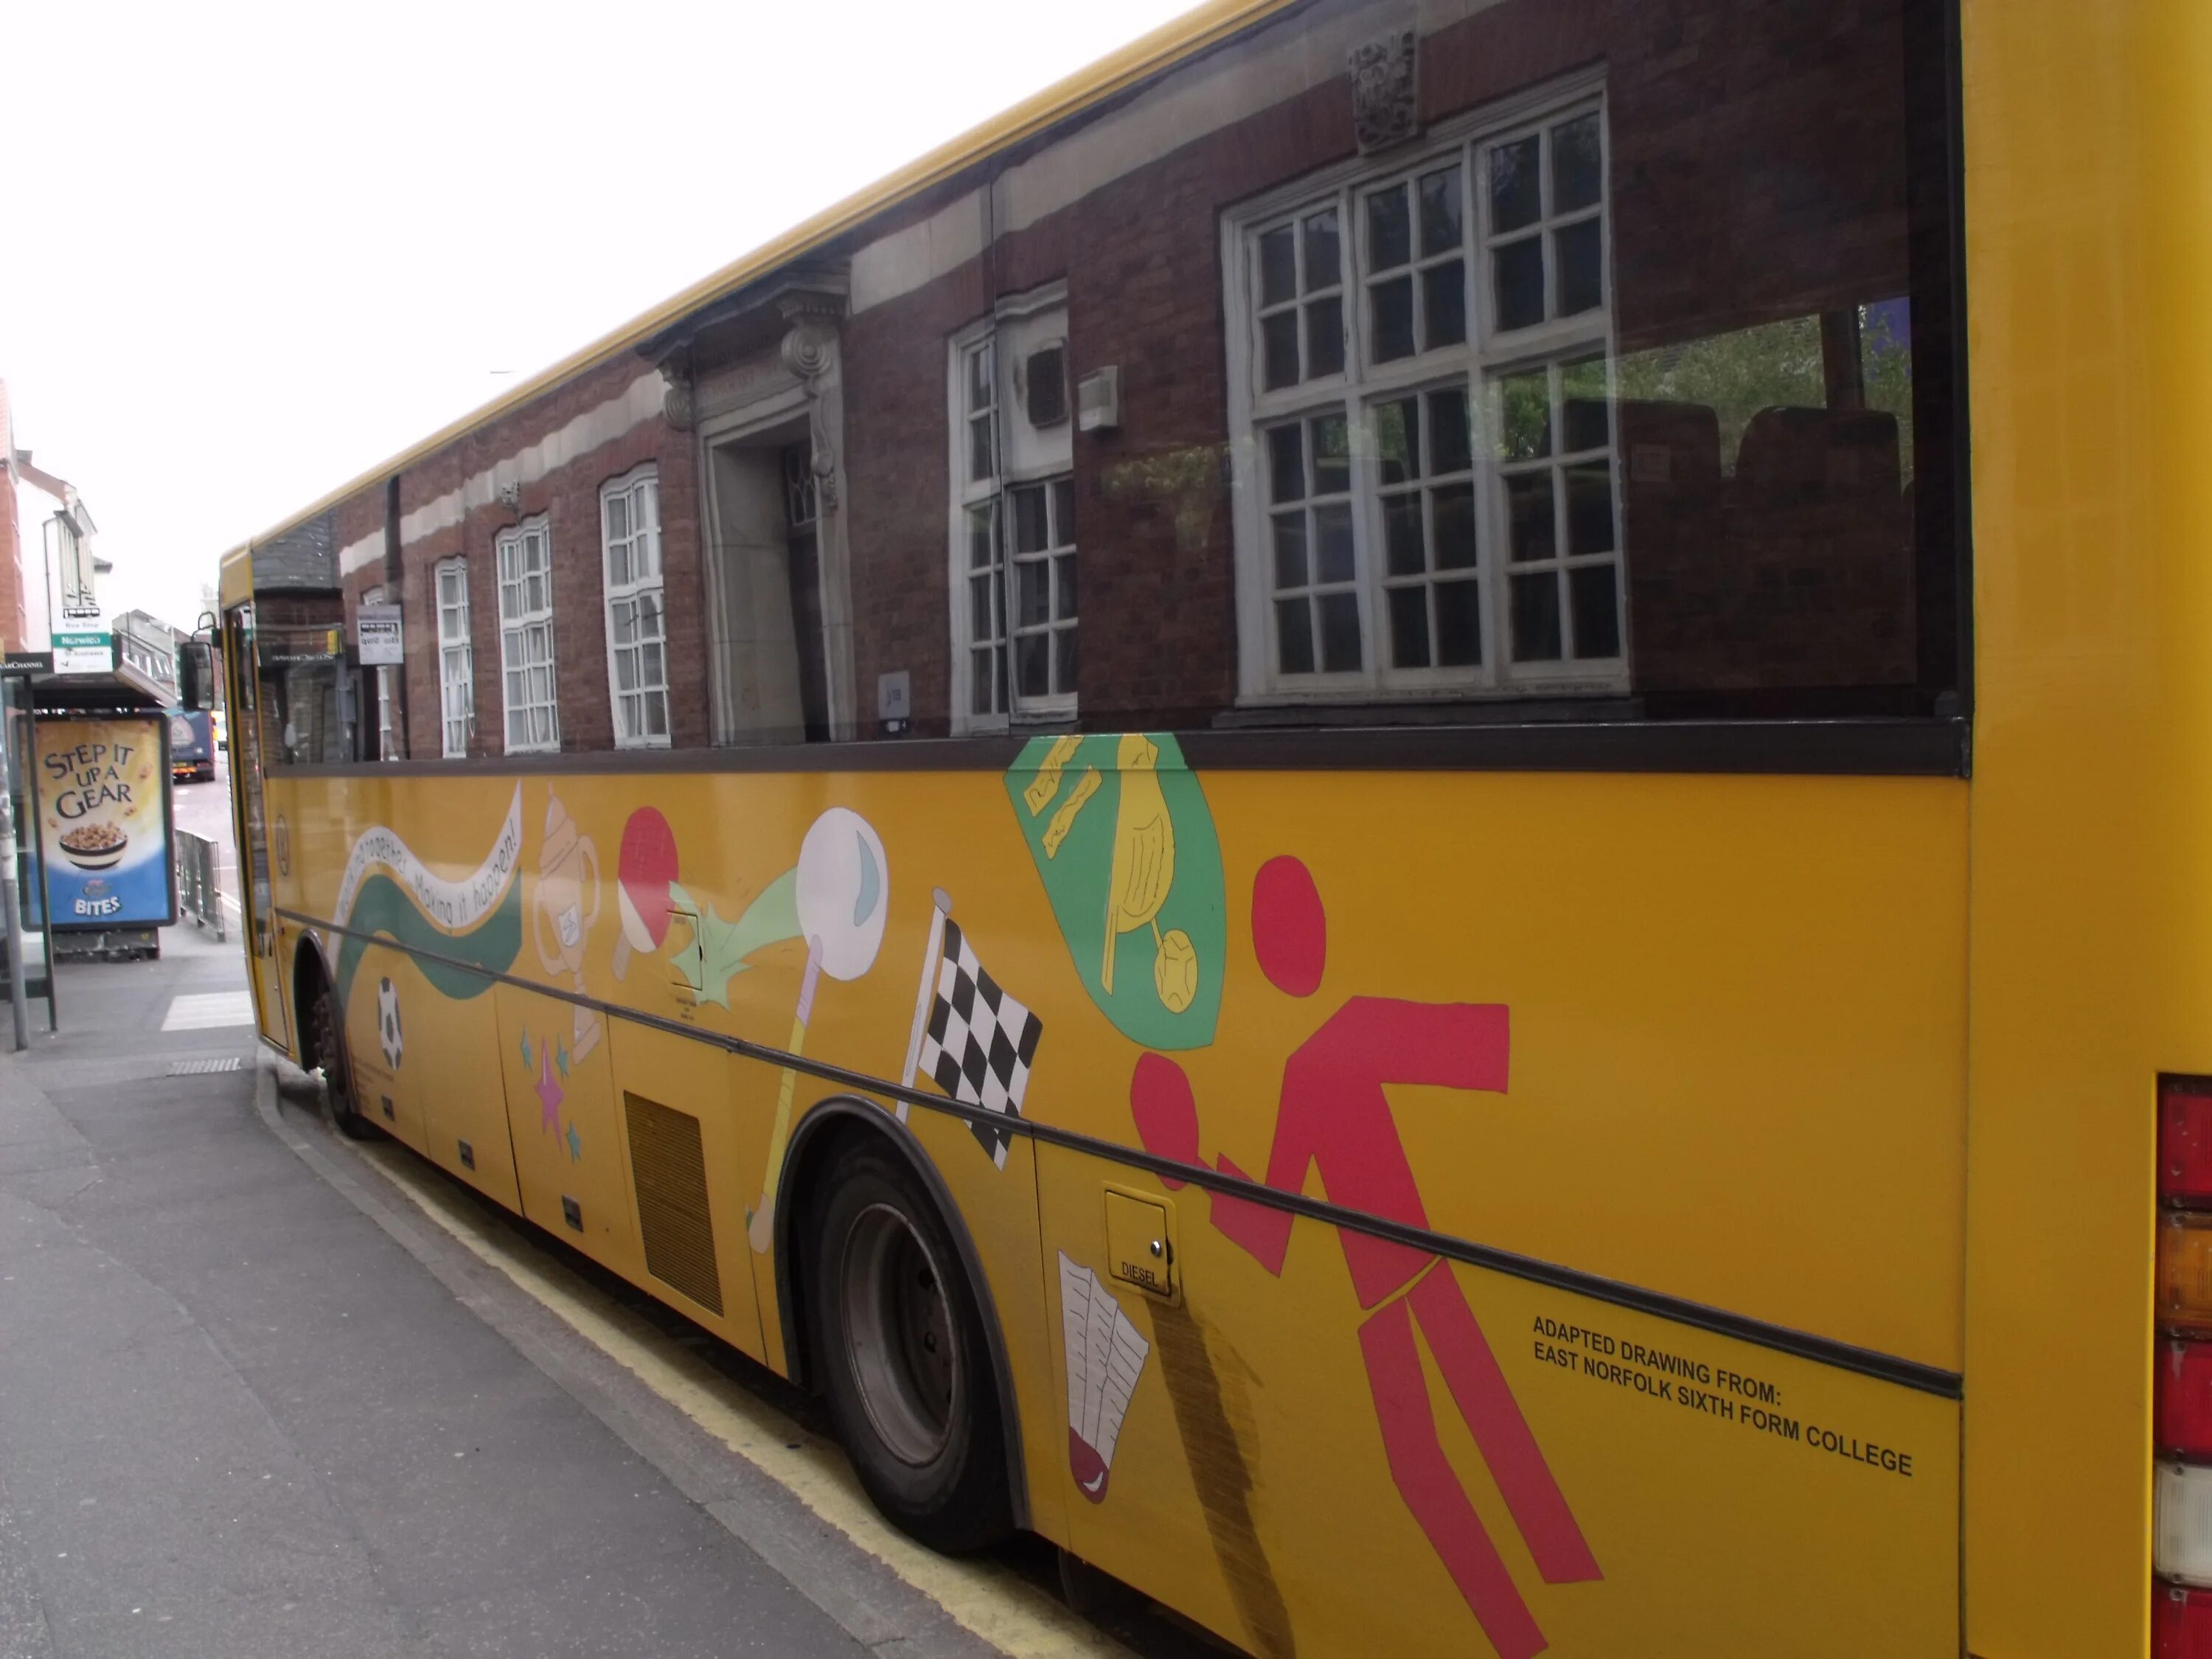 They go to work by bus. Автобусы с жёлтыми элементами. Автобус желтый на улице. Автобус с желтой полосой. Фотосессия с желтым автобусом.